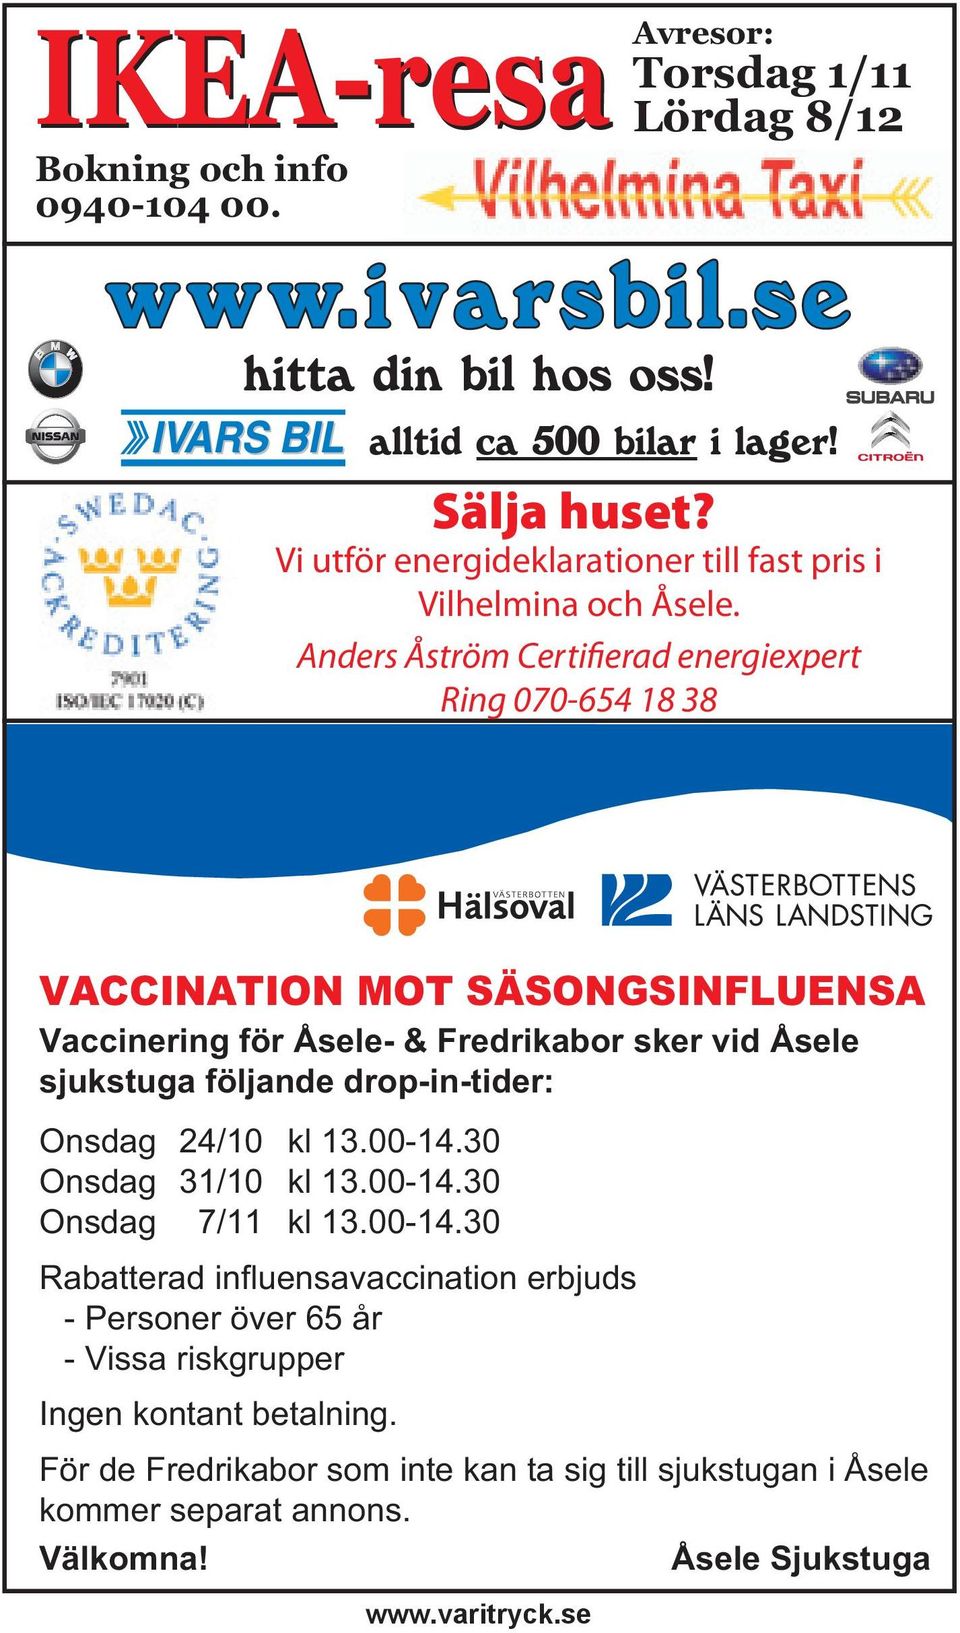 drop-in-tider: Onsdag 24/10 kl 13.00-14.30 Onsdag 31/10 kl 13.00-14.30 Onsdag 7/11 kl 13.00-14.30 Rabatterad influensavaccination erbjuds - Personer över 65 år - Vissa riskgrupper Ingen kontant betalning.